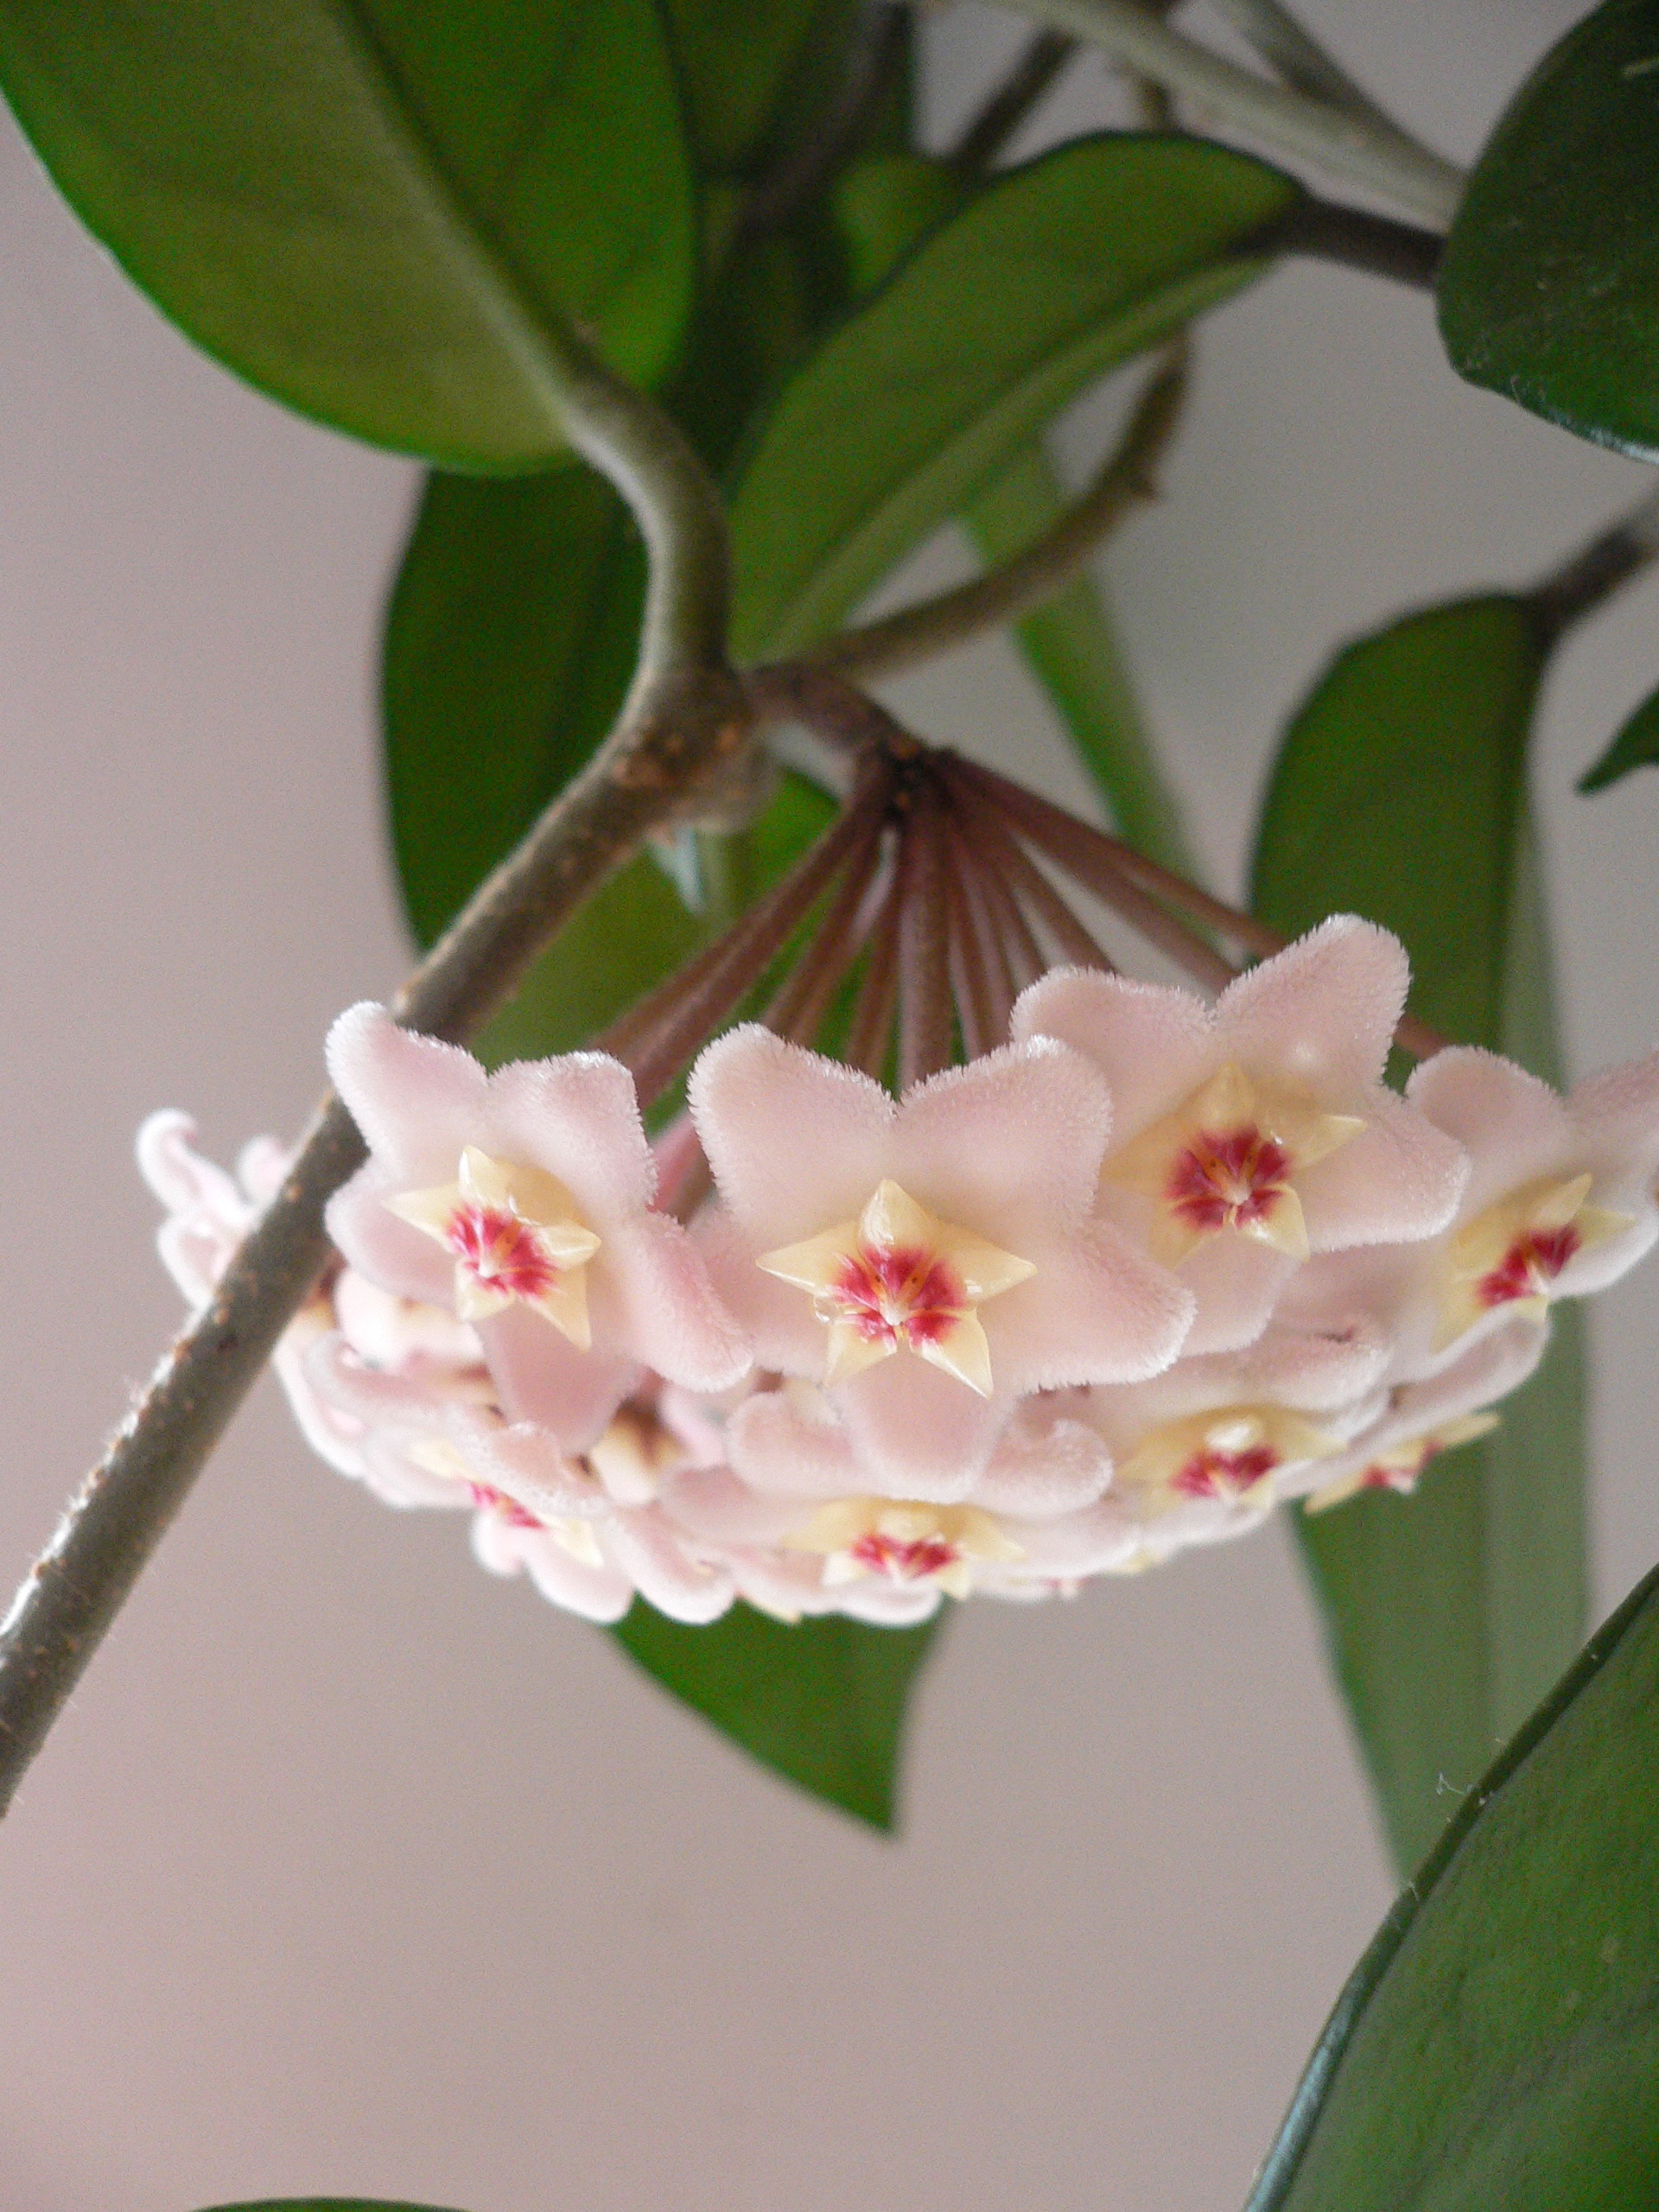 Hoya carnosa (Fiore di cera)